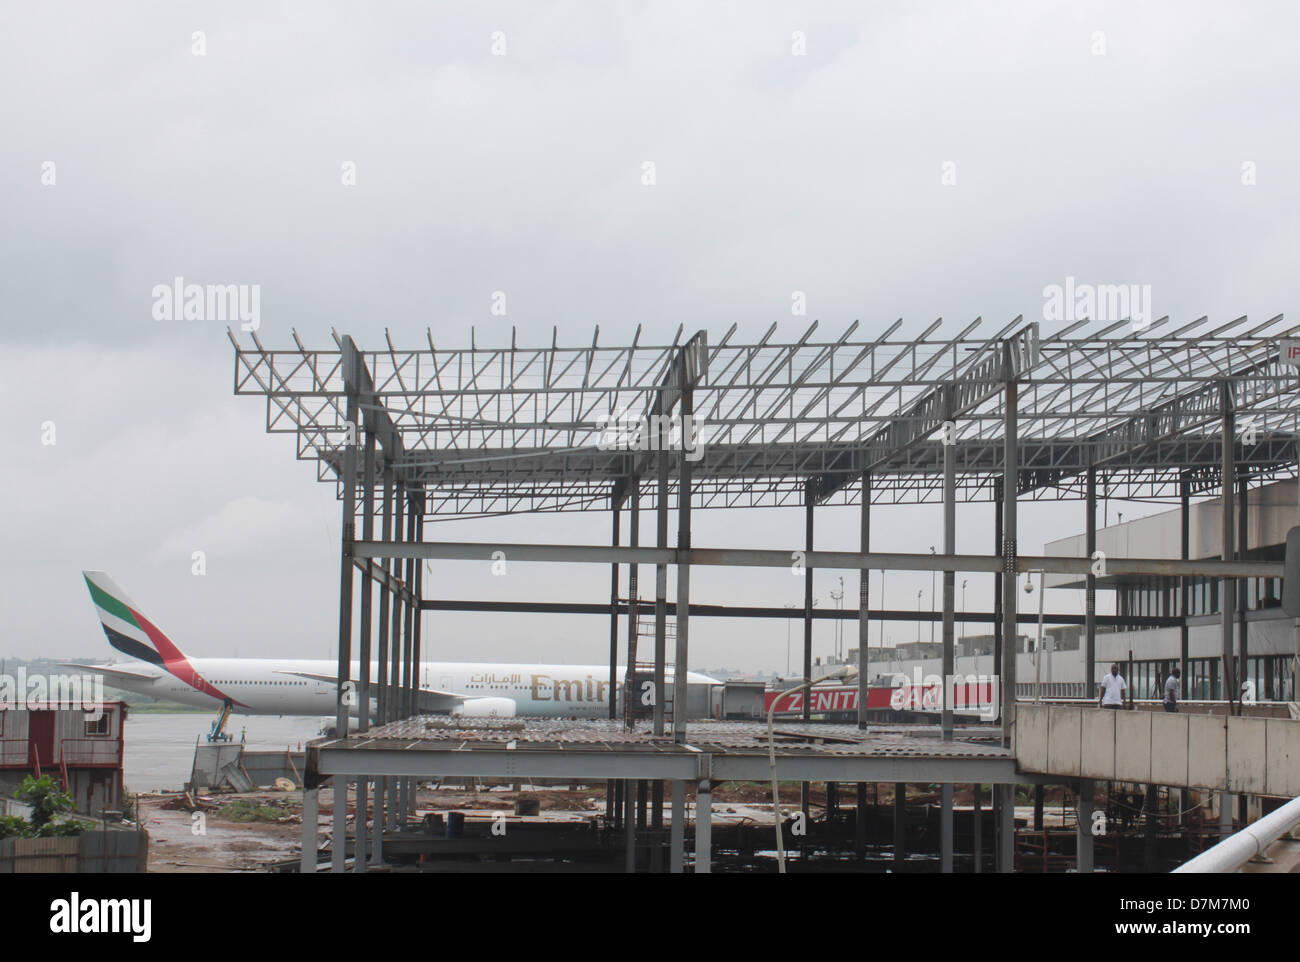 Un aéronef stationné sur la E doigt de l'aéroport Murtala Muhammed de Lagos, pans contre la construction en cours de skeleton. Banque D'Images